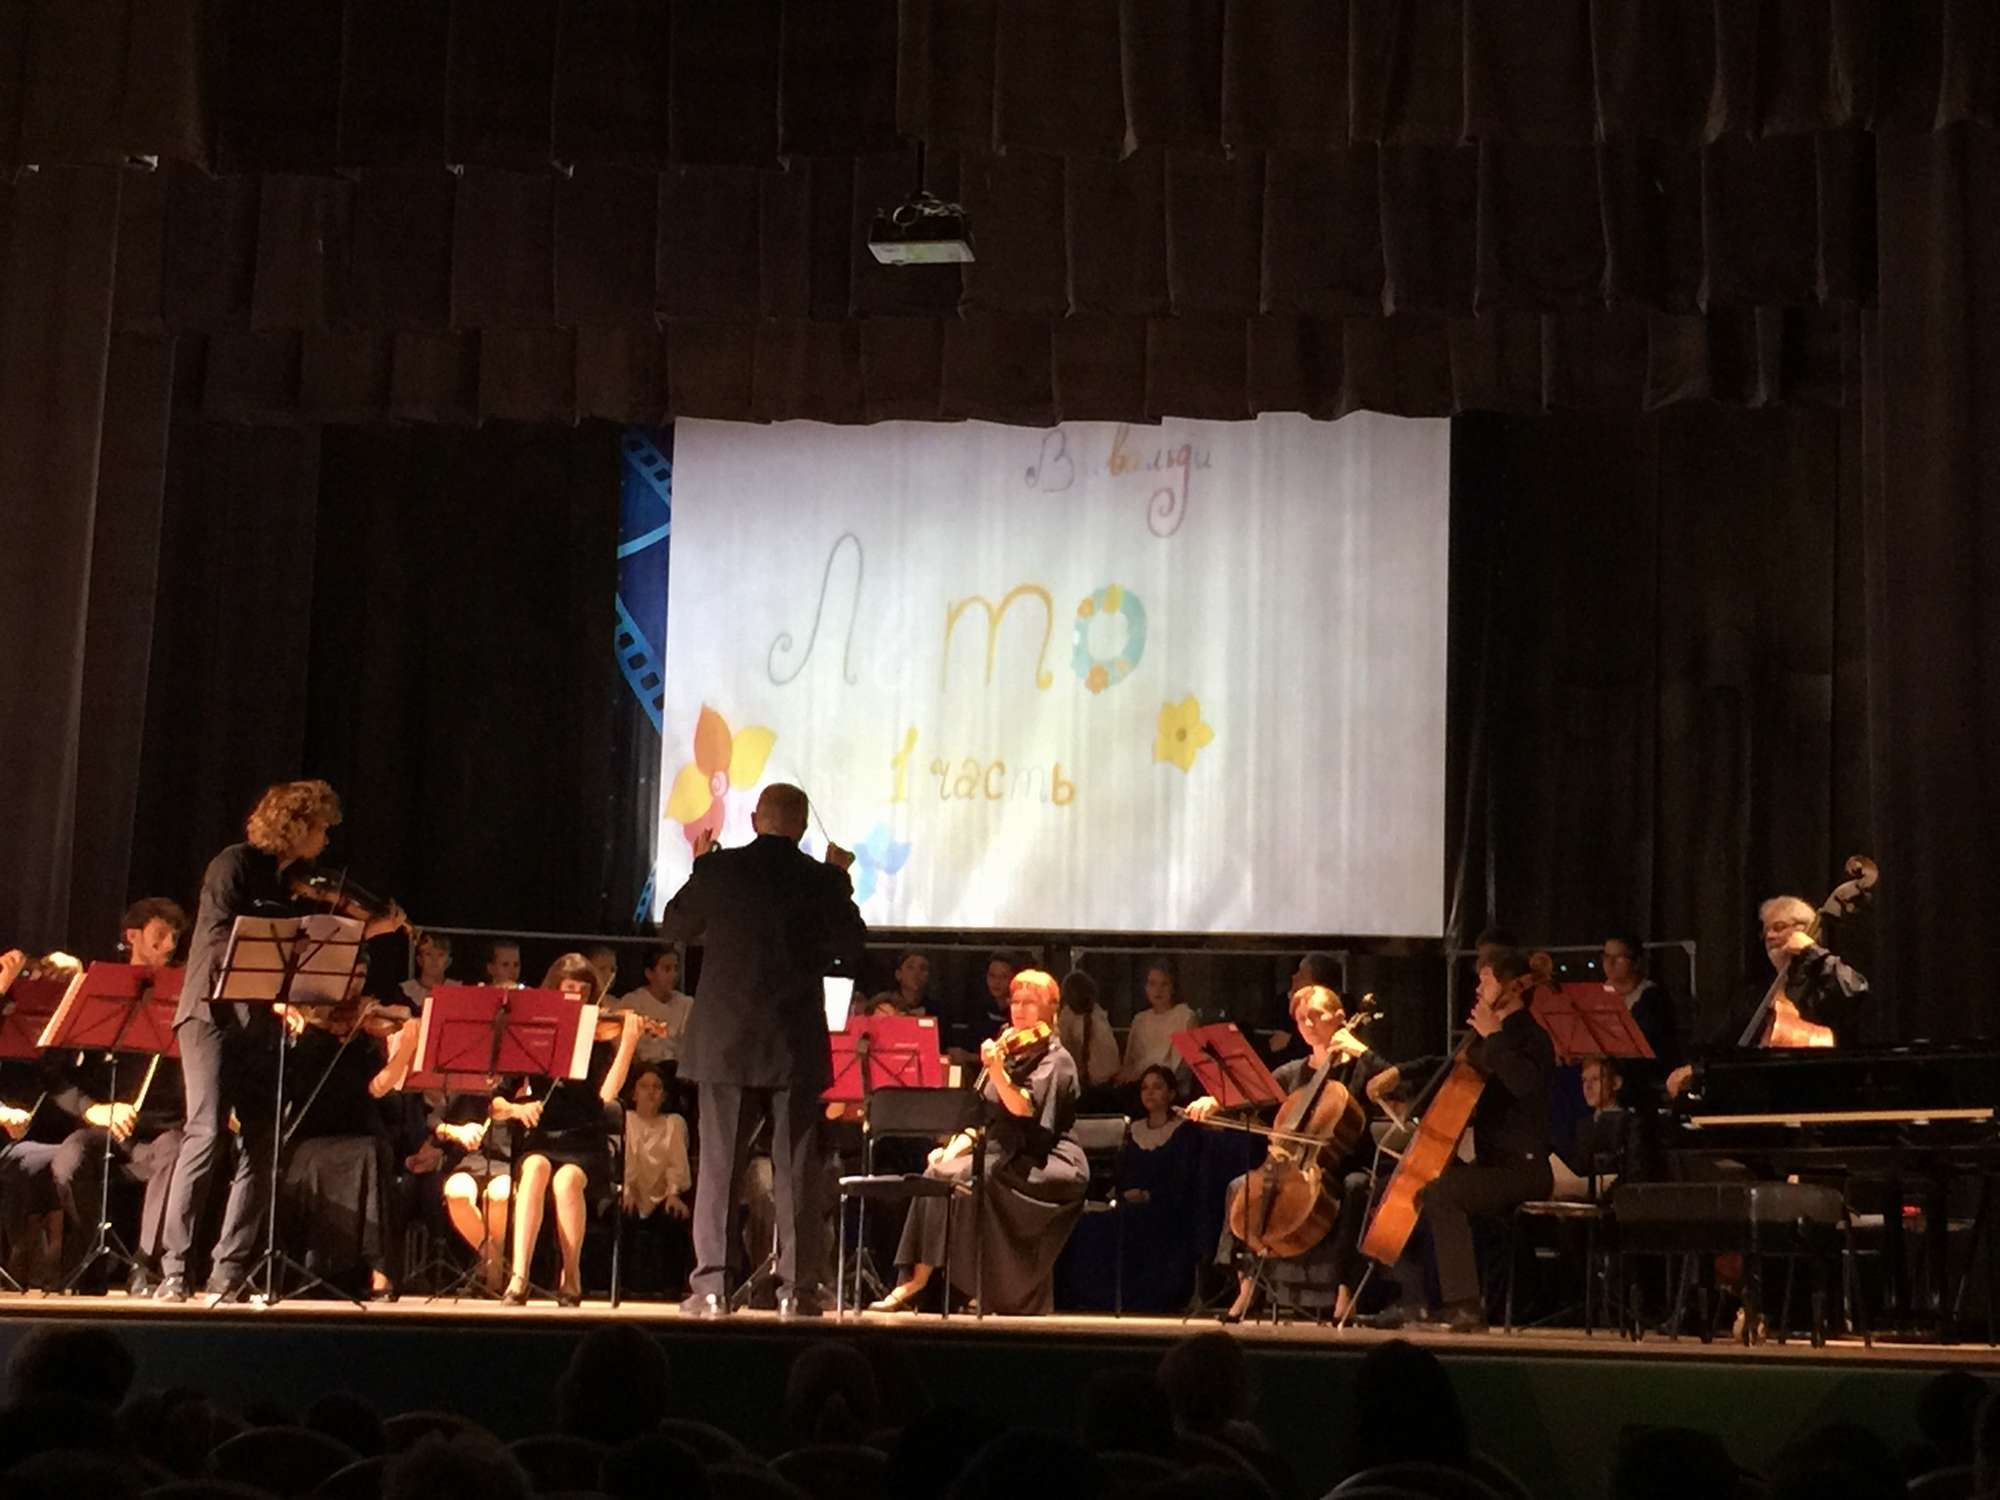 РИАМО: Концерт в рамках проекта «Детская областная филармония» пройдет в Дубне 27 января